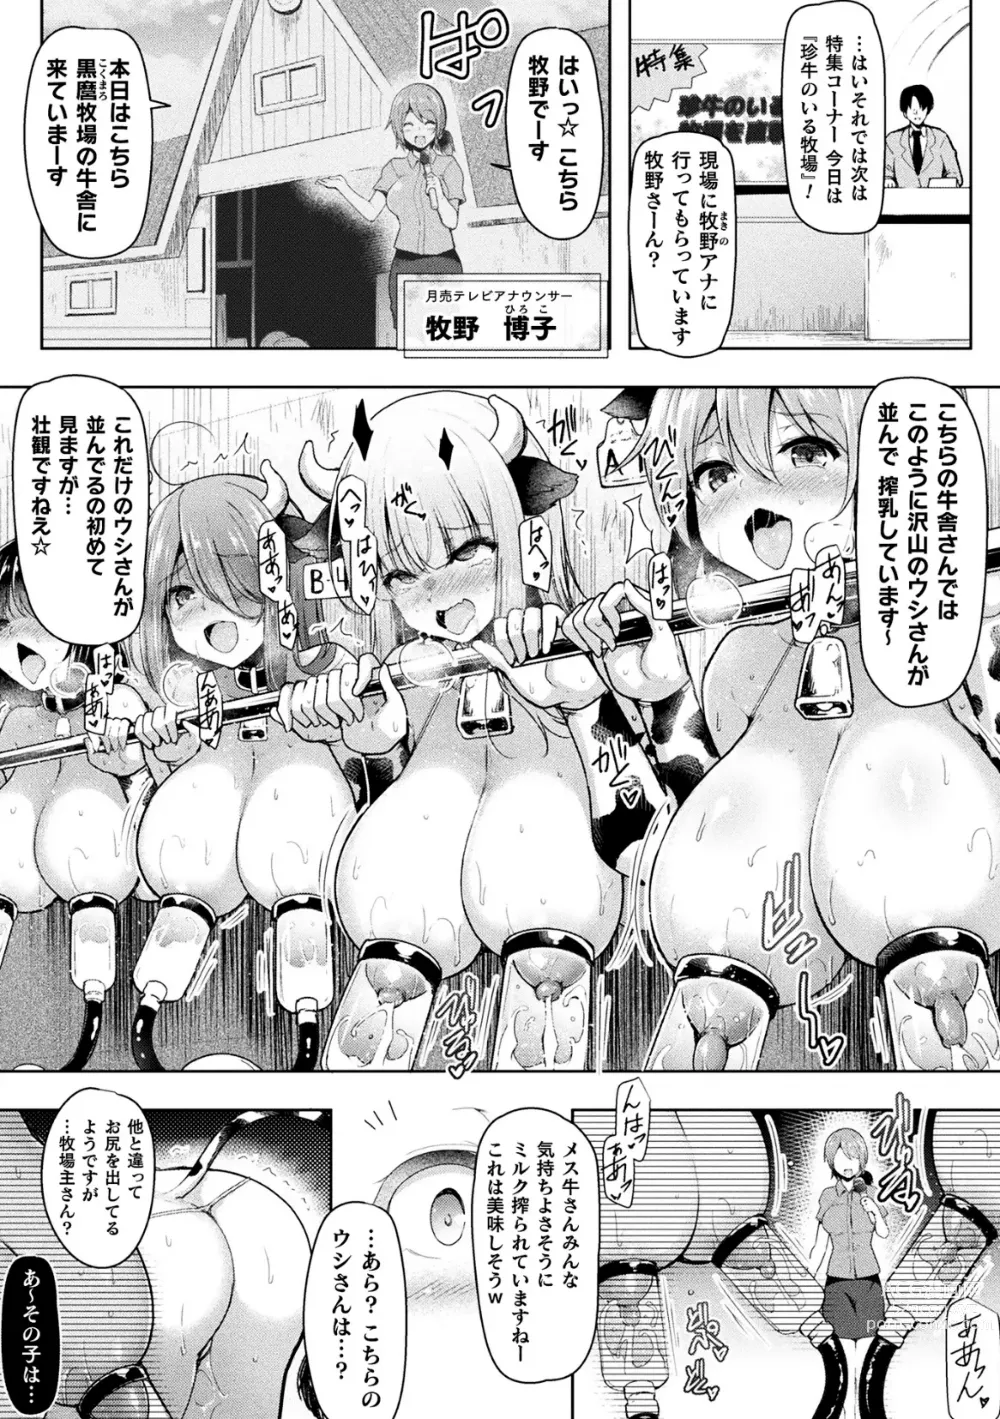 Page 3 of manga 2D Comic Magazine Futanari Kabe Sao Kabe Shiri Futanari Heroine Sakusei Iki Jigoku! Vol. 1